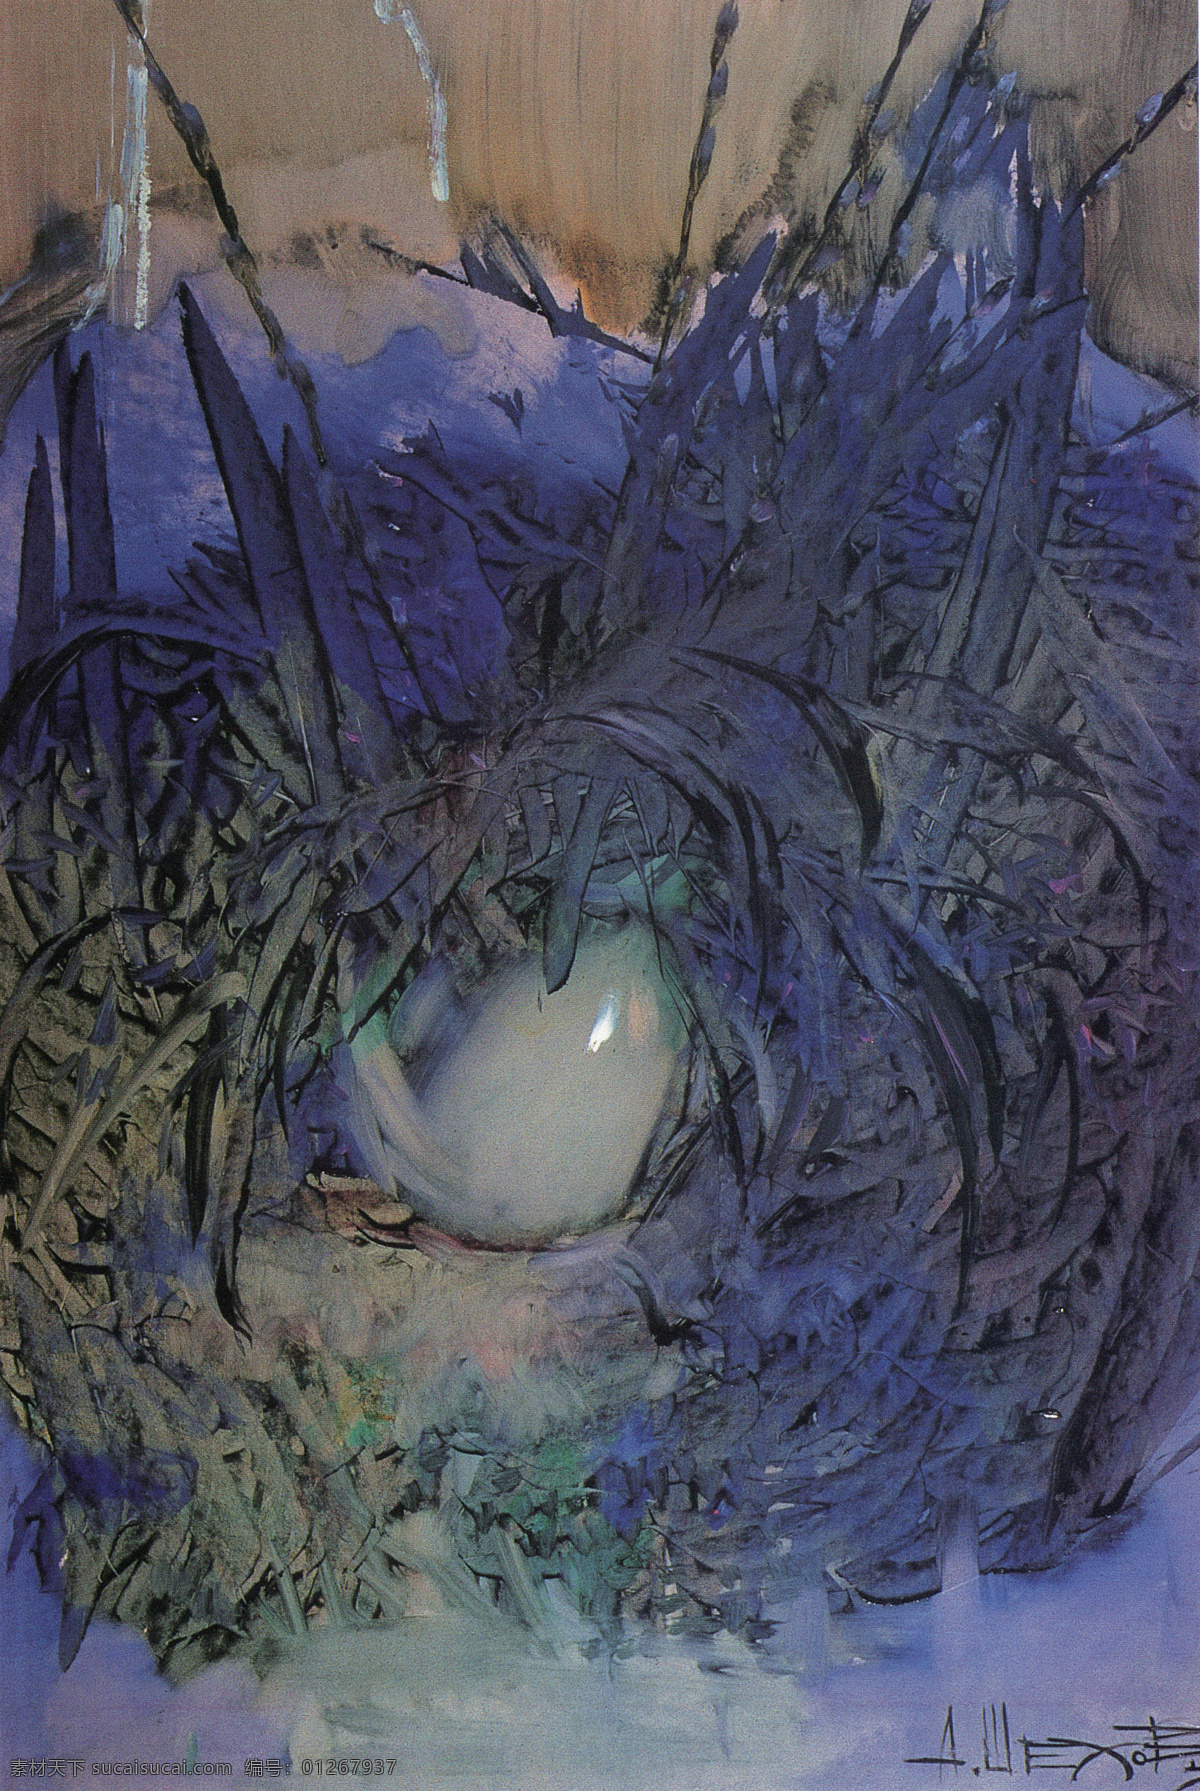 春 国外 花 花卉 花瓶 绘画书法 静物 蓝色 木板油画 乌克兰 青年画家 油画 作品选 文化艺术 装饰素材